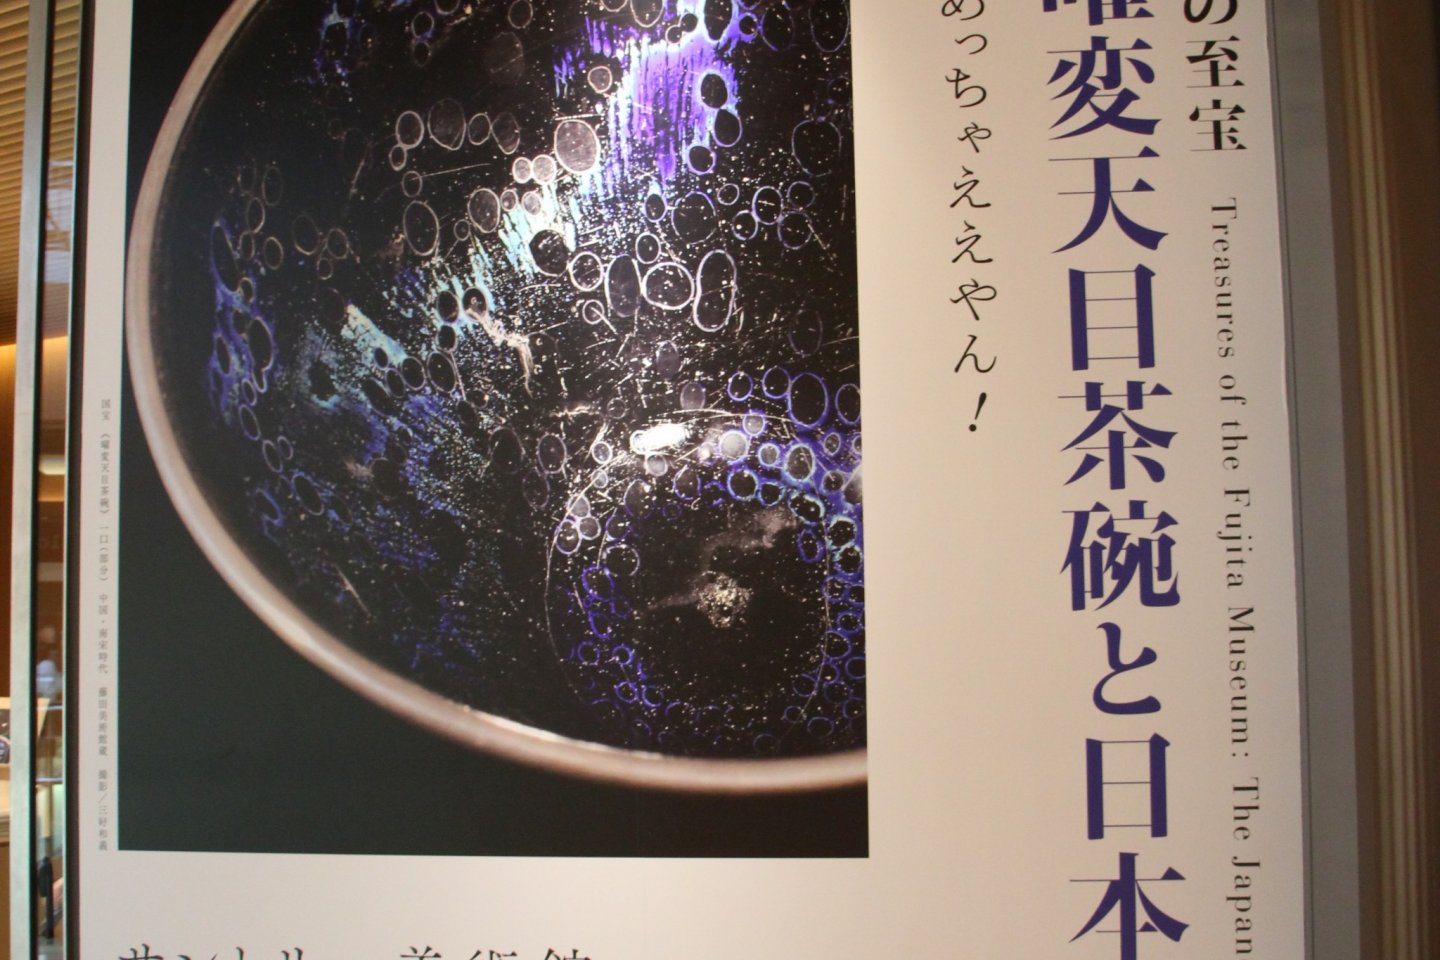 Вывеска Сокровища музея Фудзита: Японская концепция красоты. Здесь размещена фотография красивейшей в музее чаши для чая